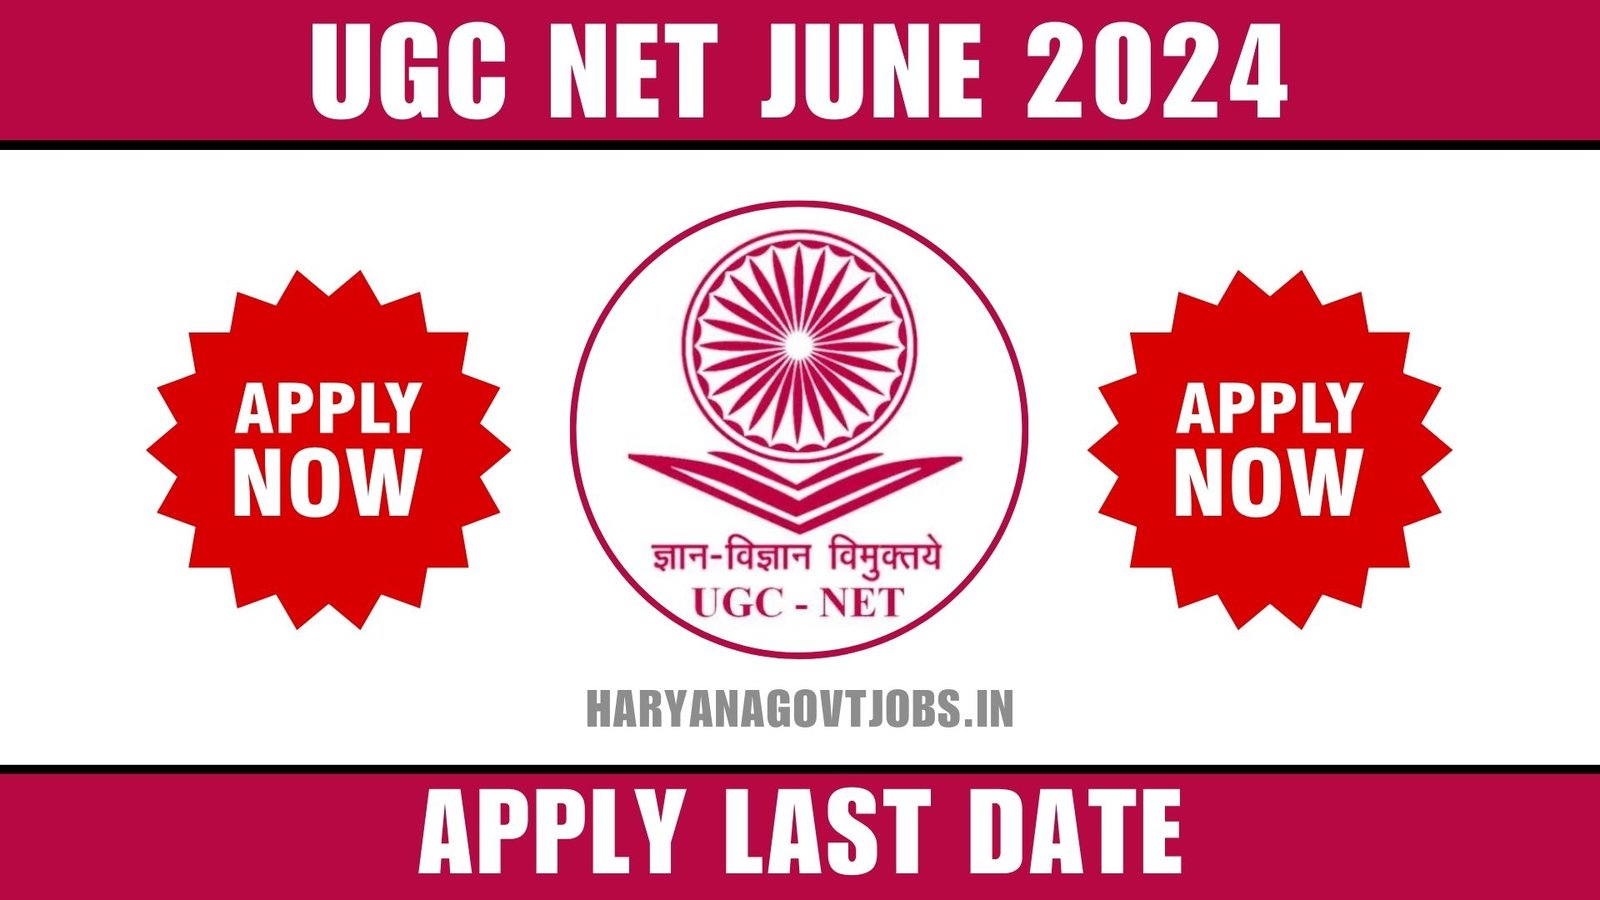 UGC NET June 2024 Overview